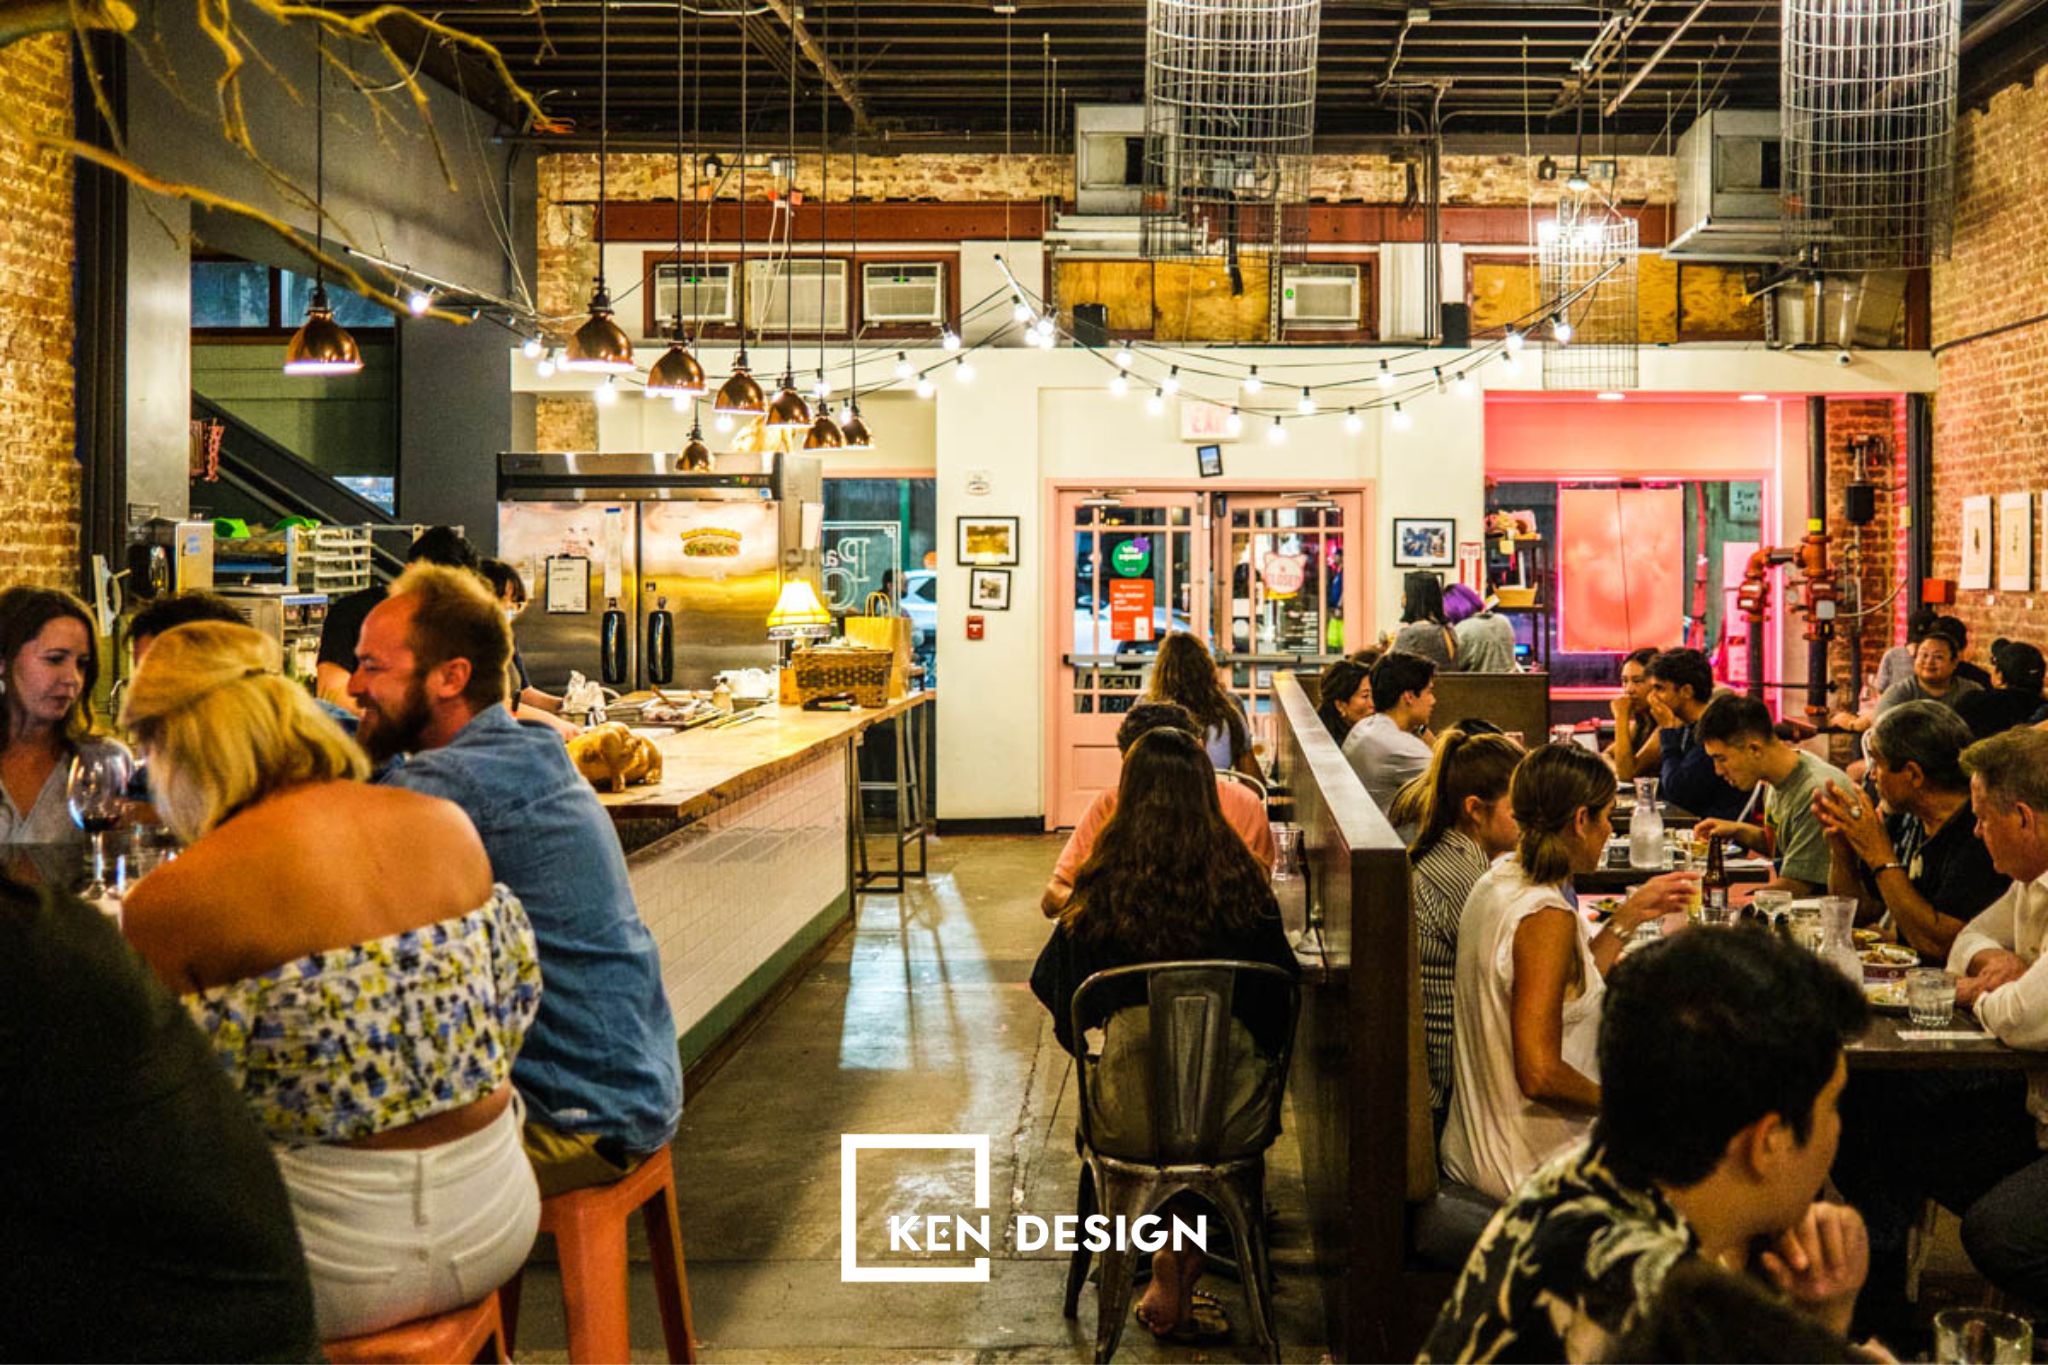 Thiết kế nhà hàng The Pig and the Lady tại Hawaii - Mỹ | Kendesign